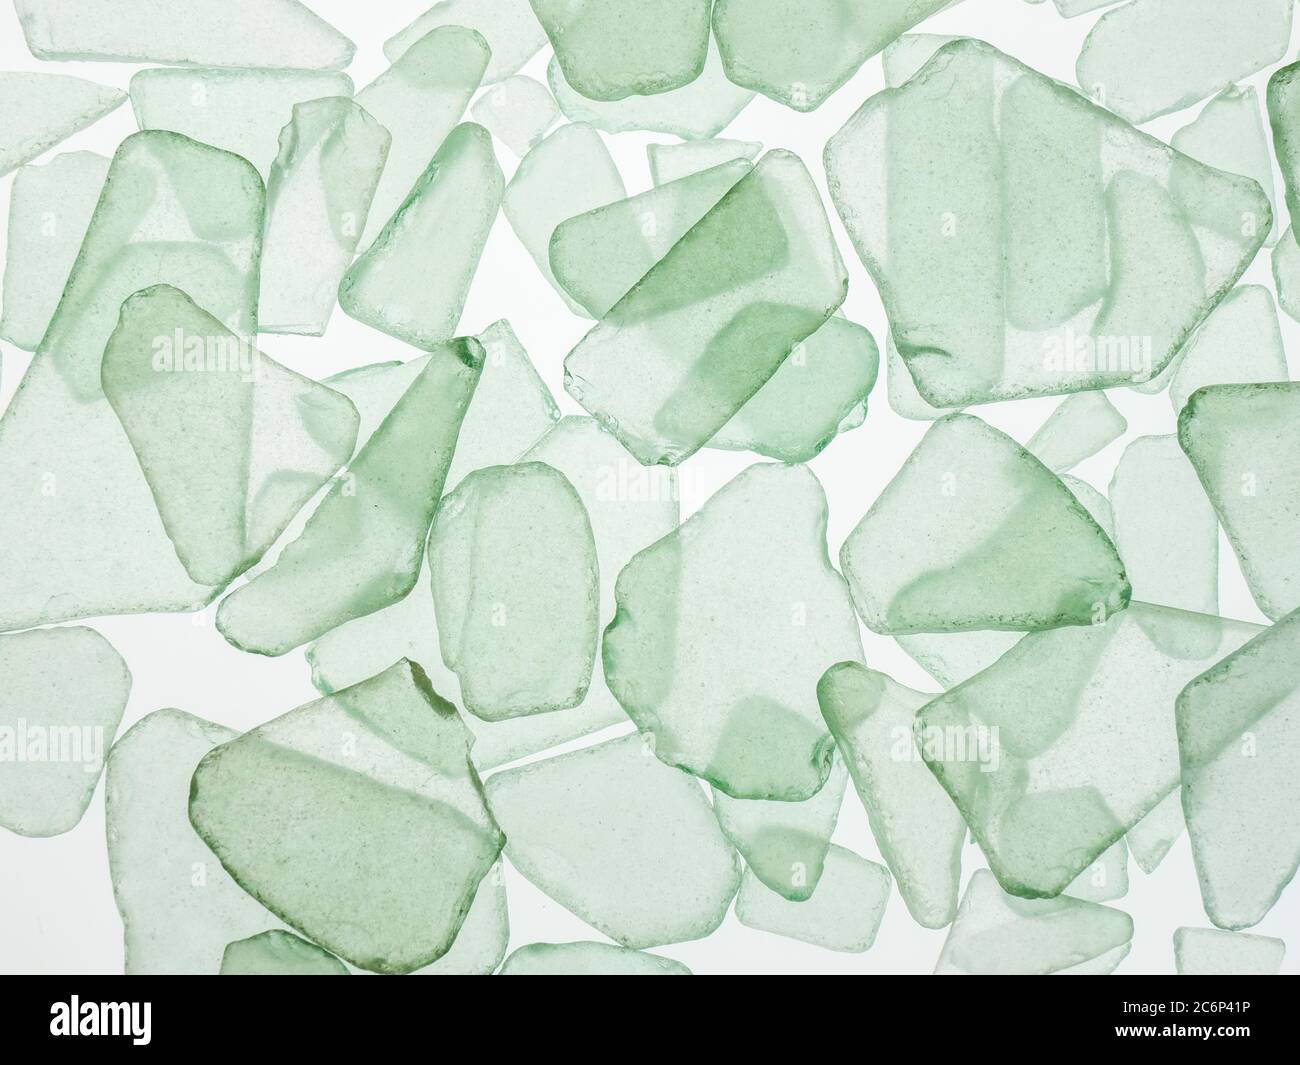 Nahaufnahme Füllrahmen aus lichtdurchlässigen hellgrünen oder aqua Sea Glas Chips auf weißem Hintergrund Stockfoto